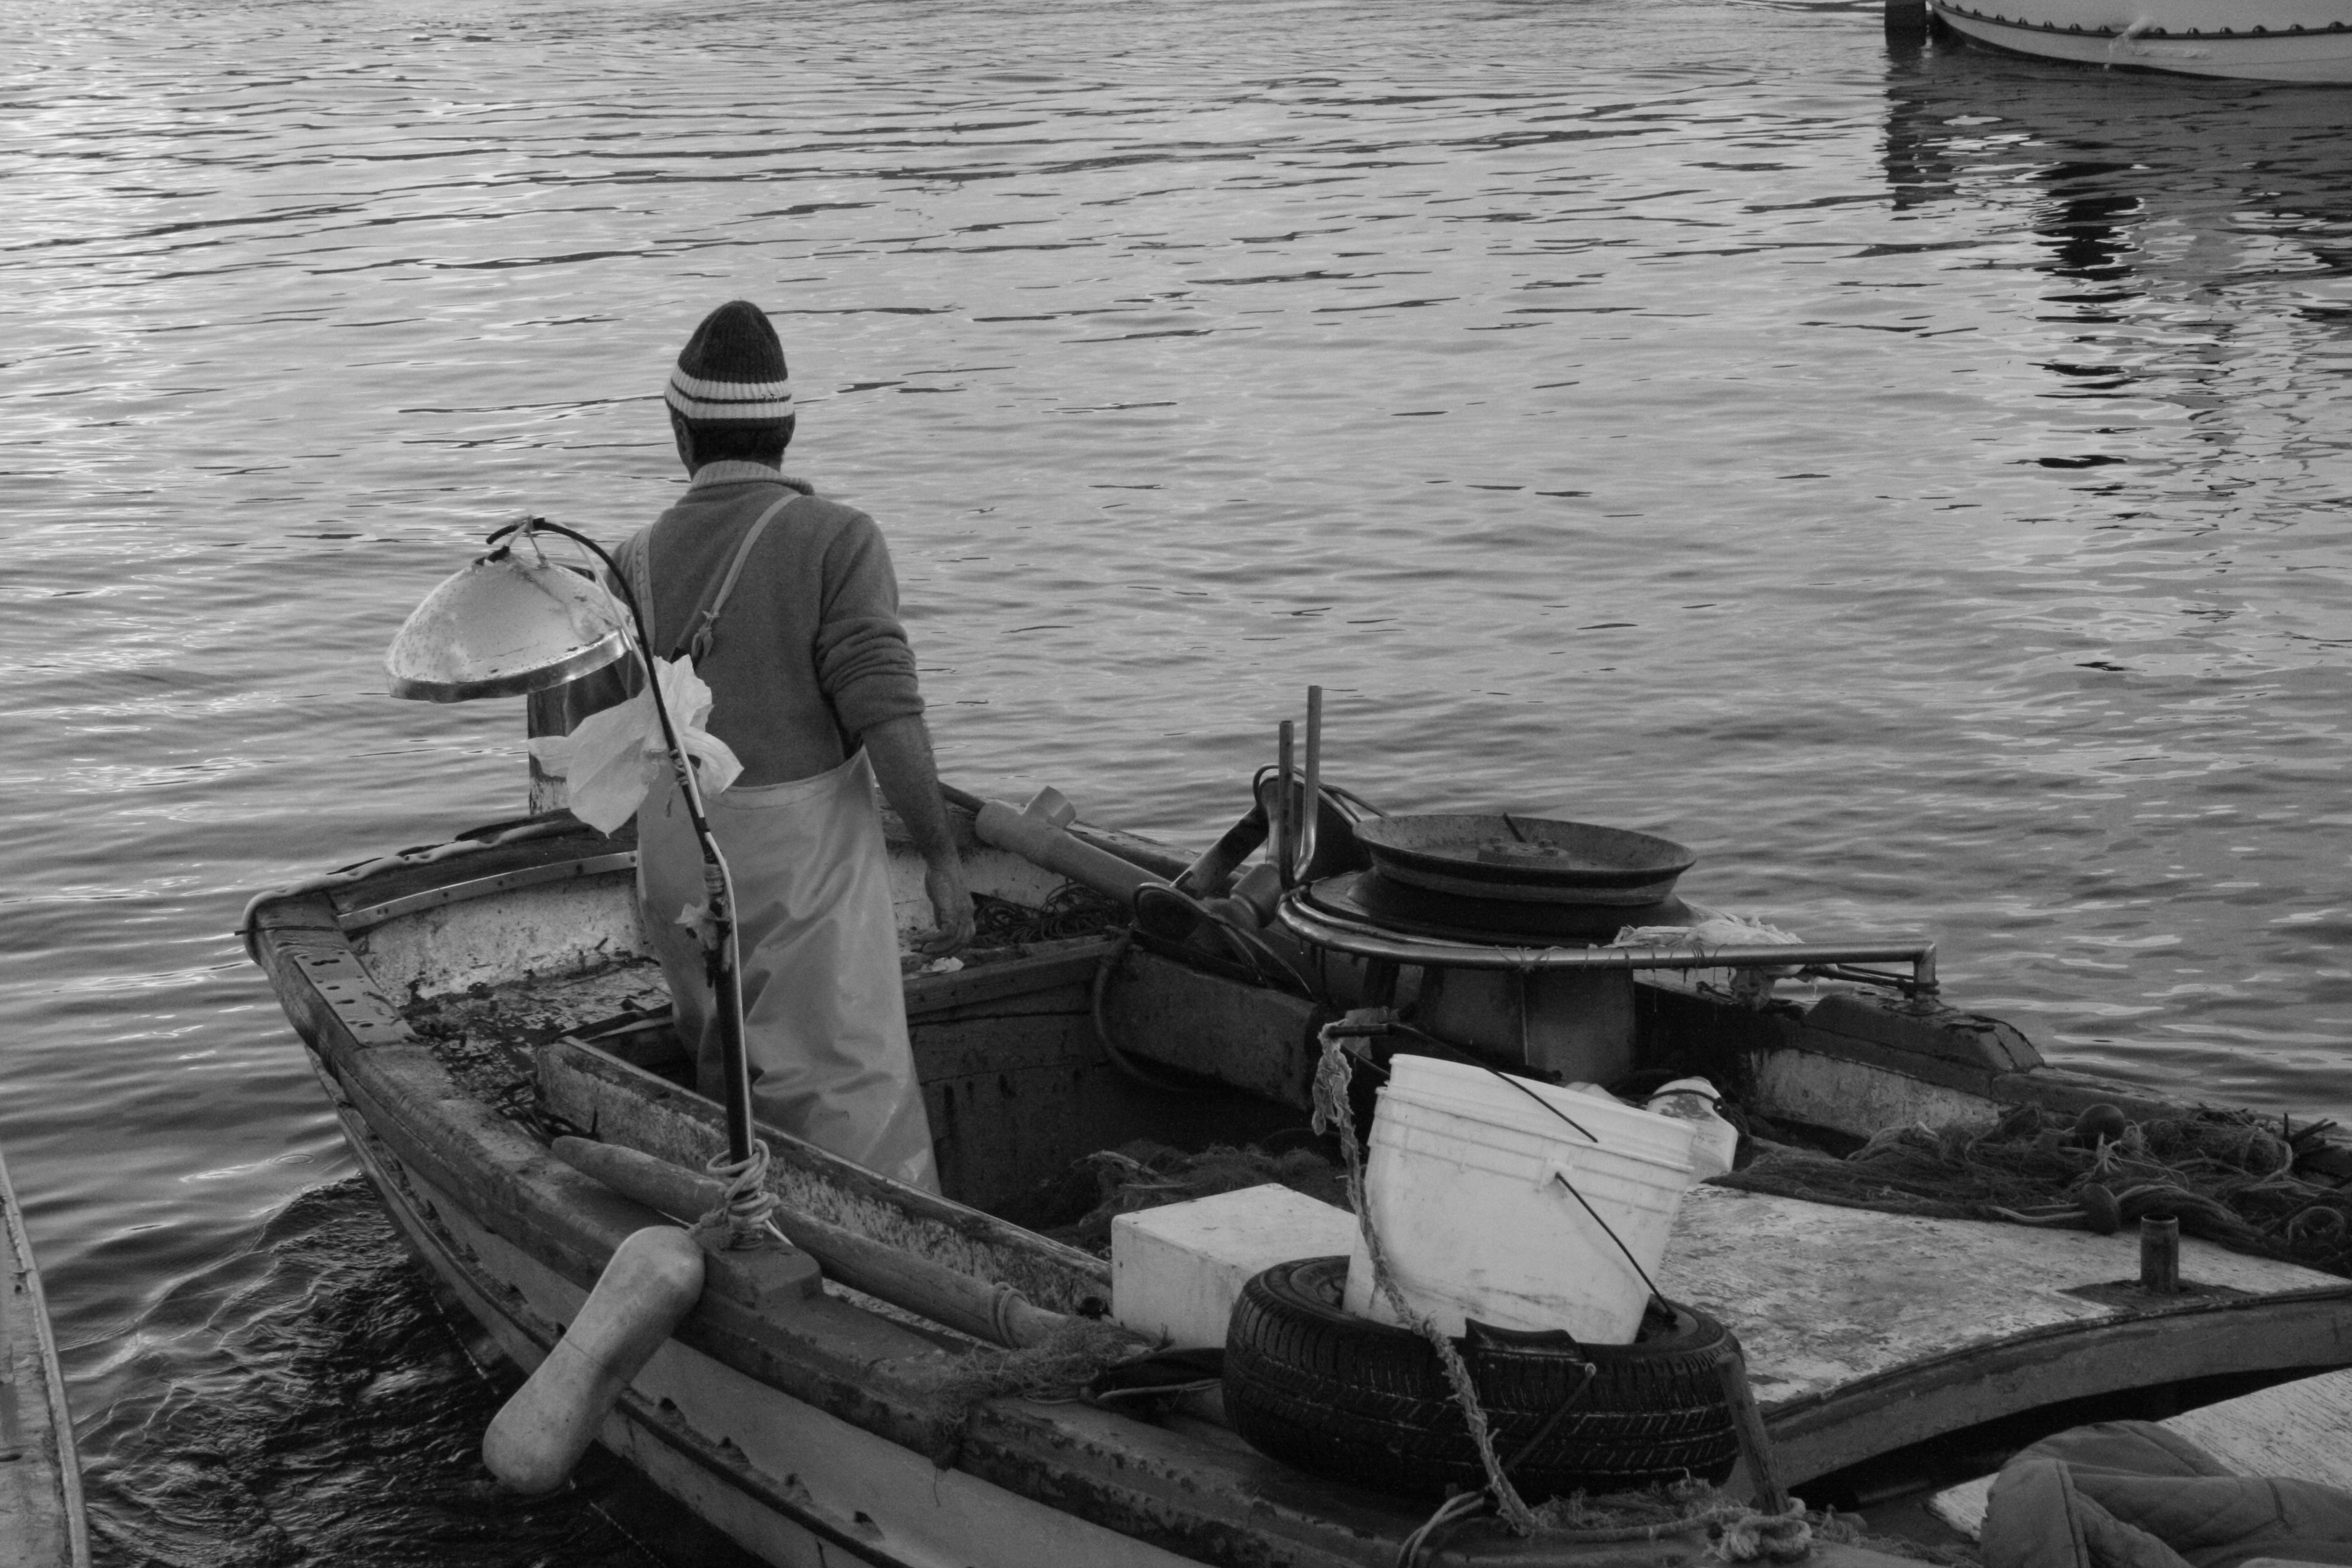 Pescatori-Barca con rete- Copyright Panastudio. Tutti i diritti riservati